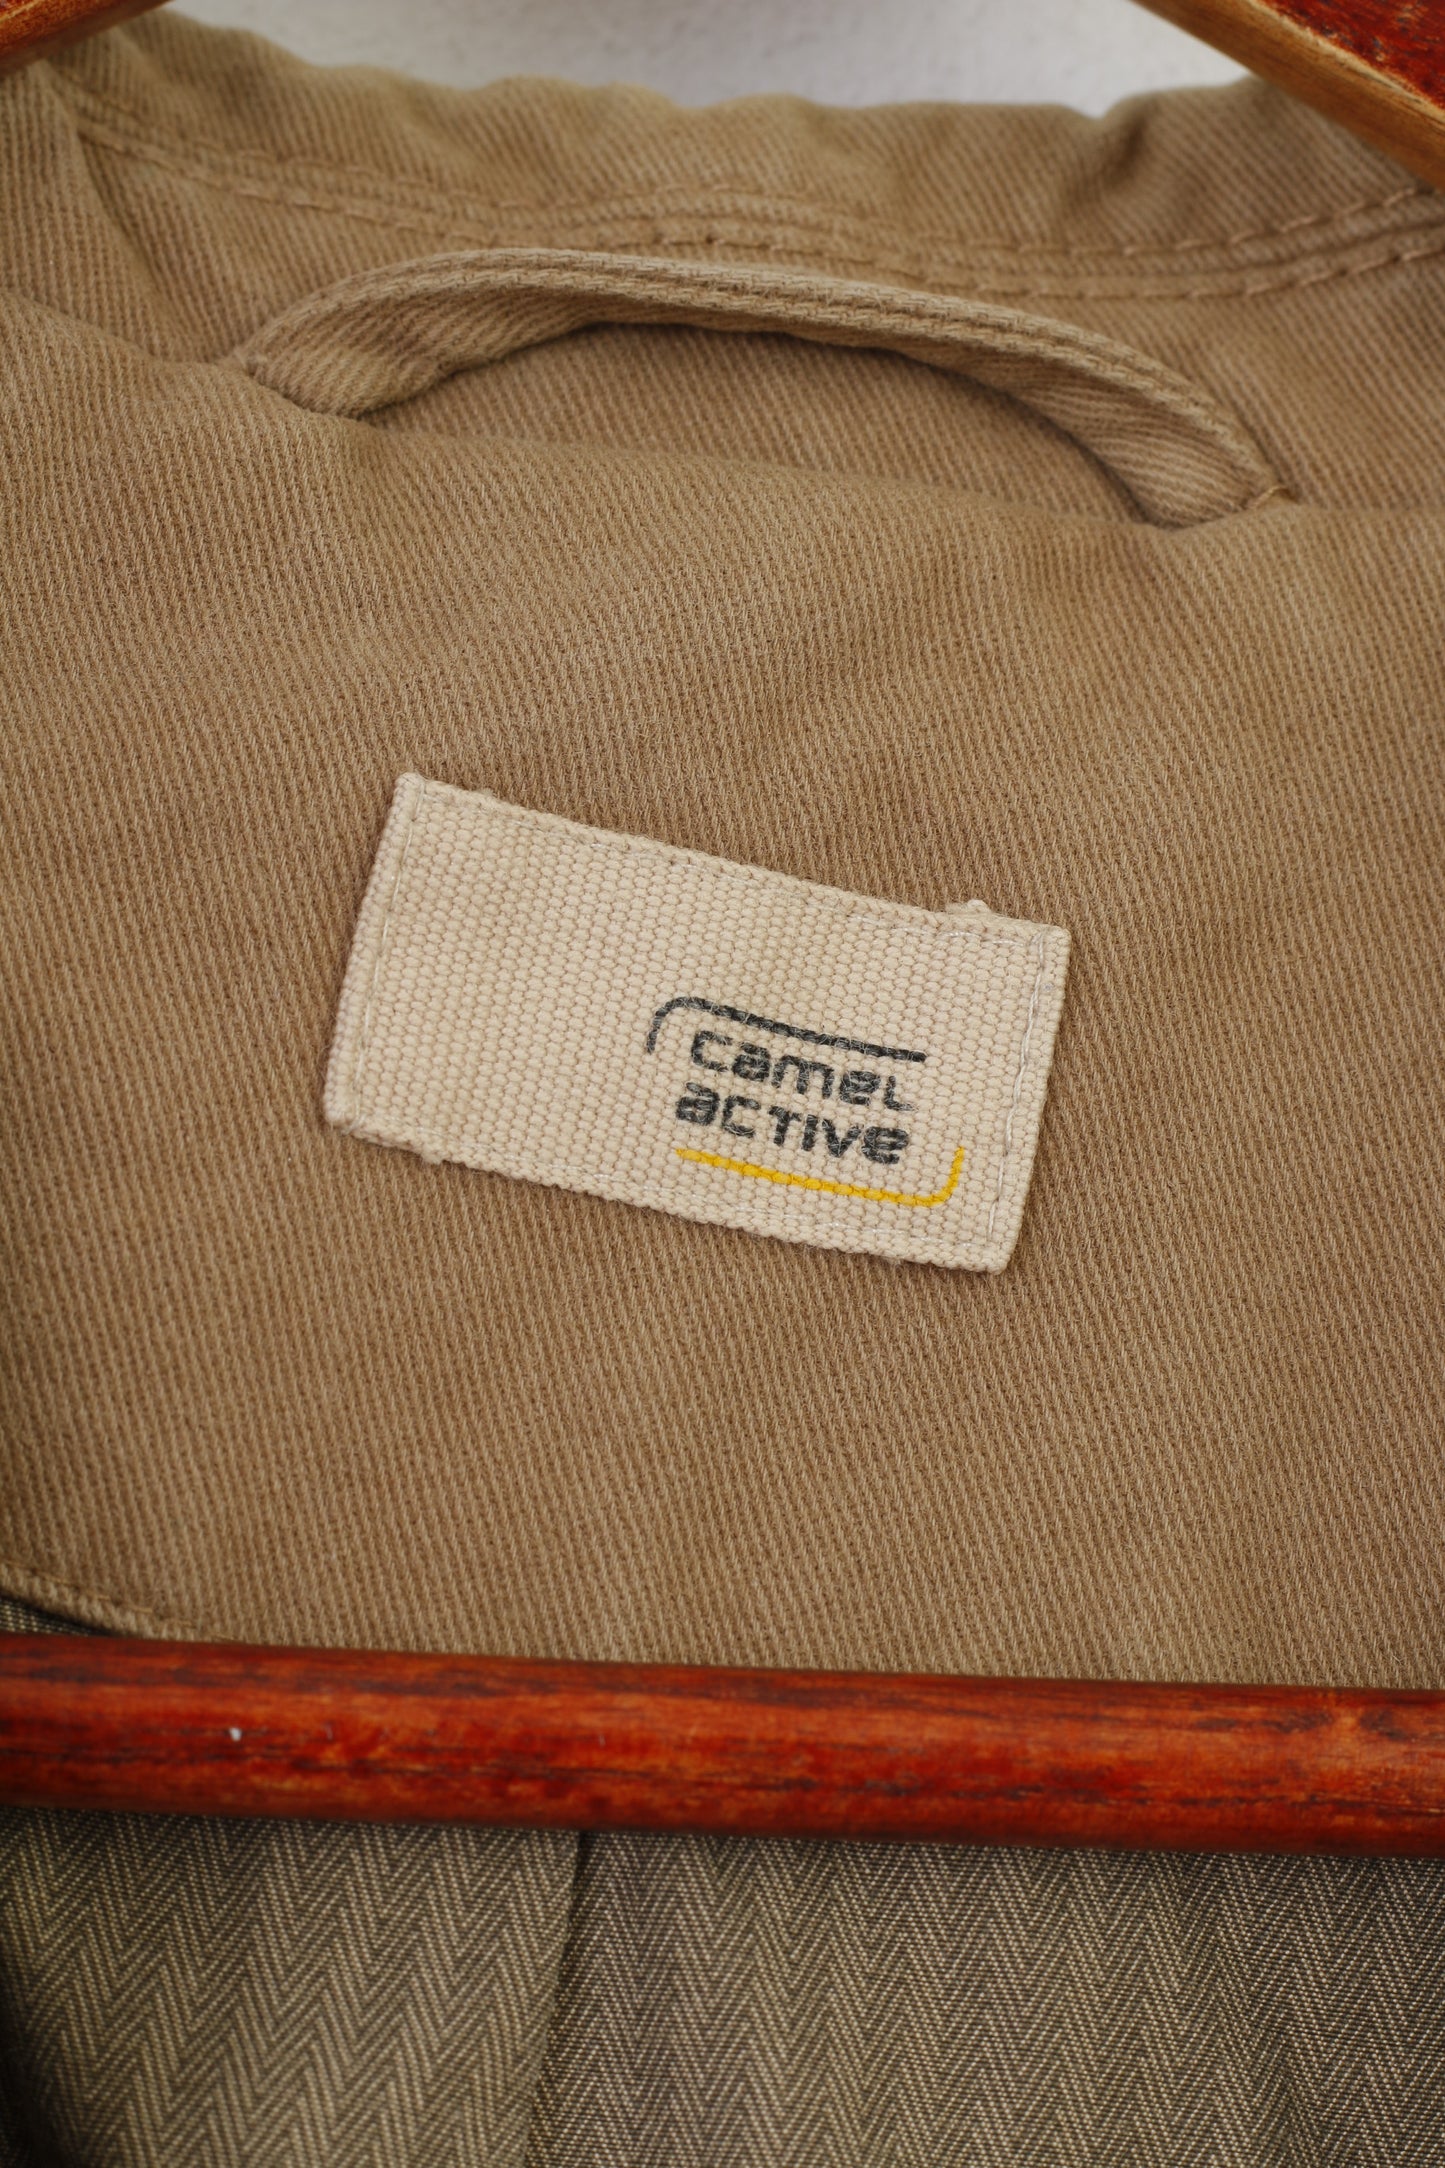 Giacca da uomo 24 Camel Active con fondo beige Giacca con tasche vintage in cotone classico monopetto